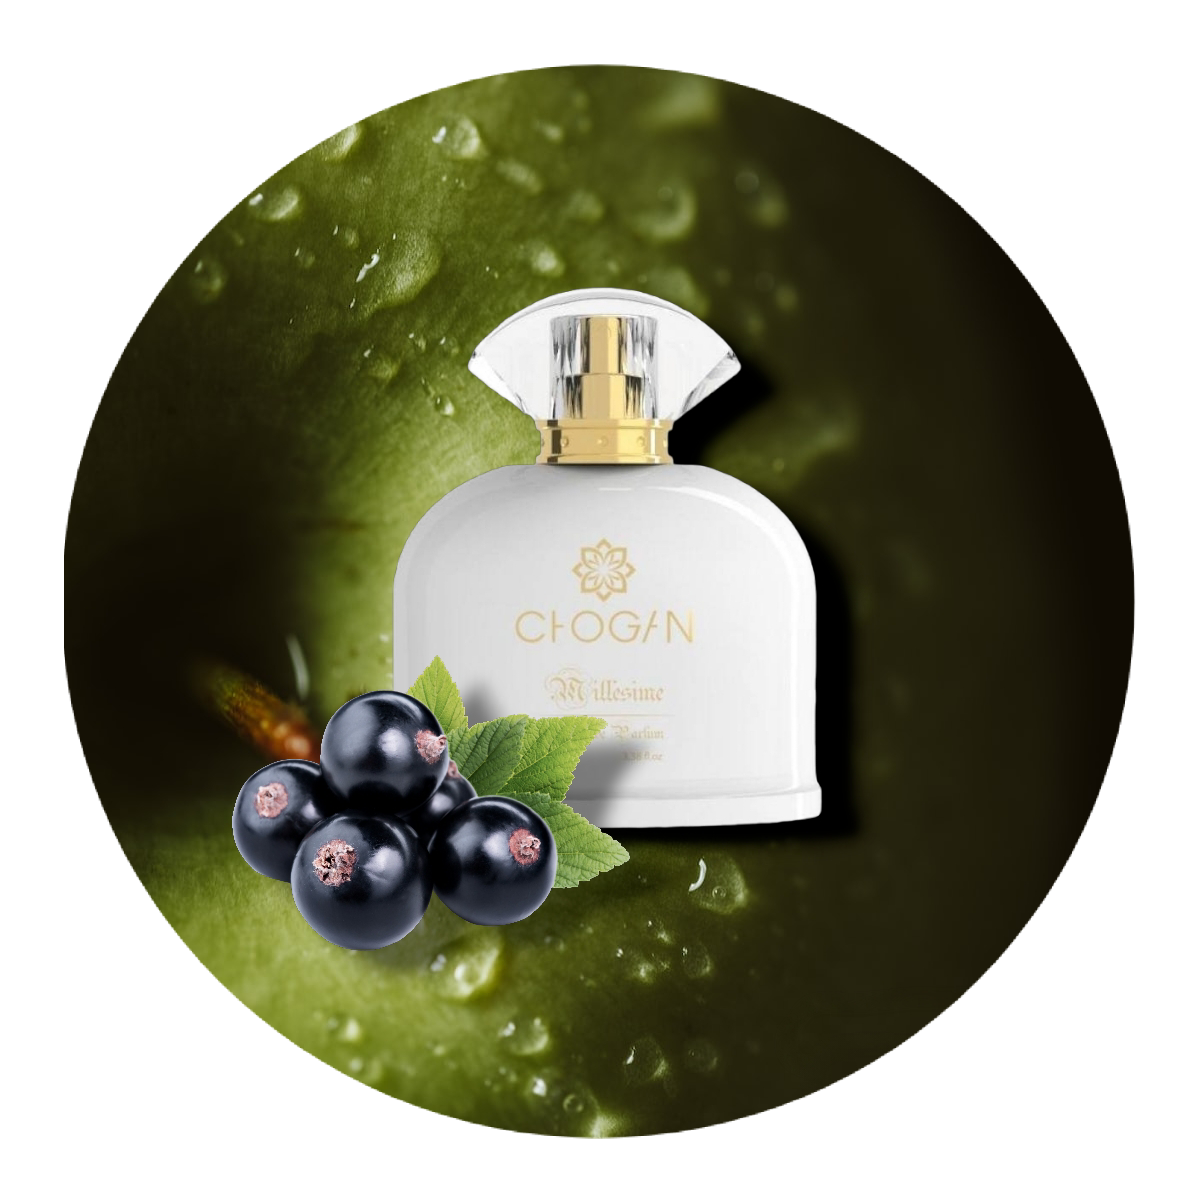 Chogan Parfum Nr. 95 der Duftfamilie Blumig Fruchtig.